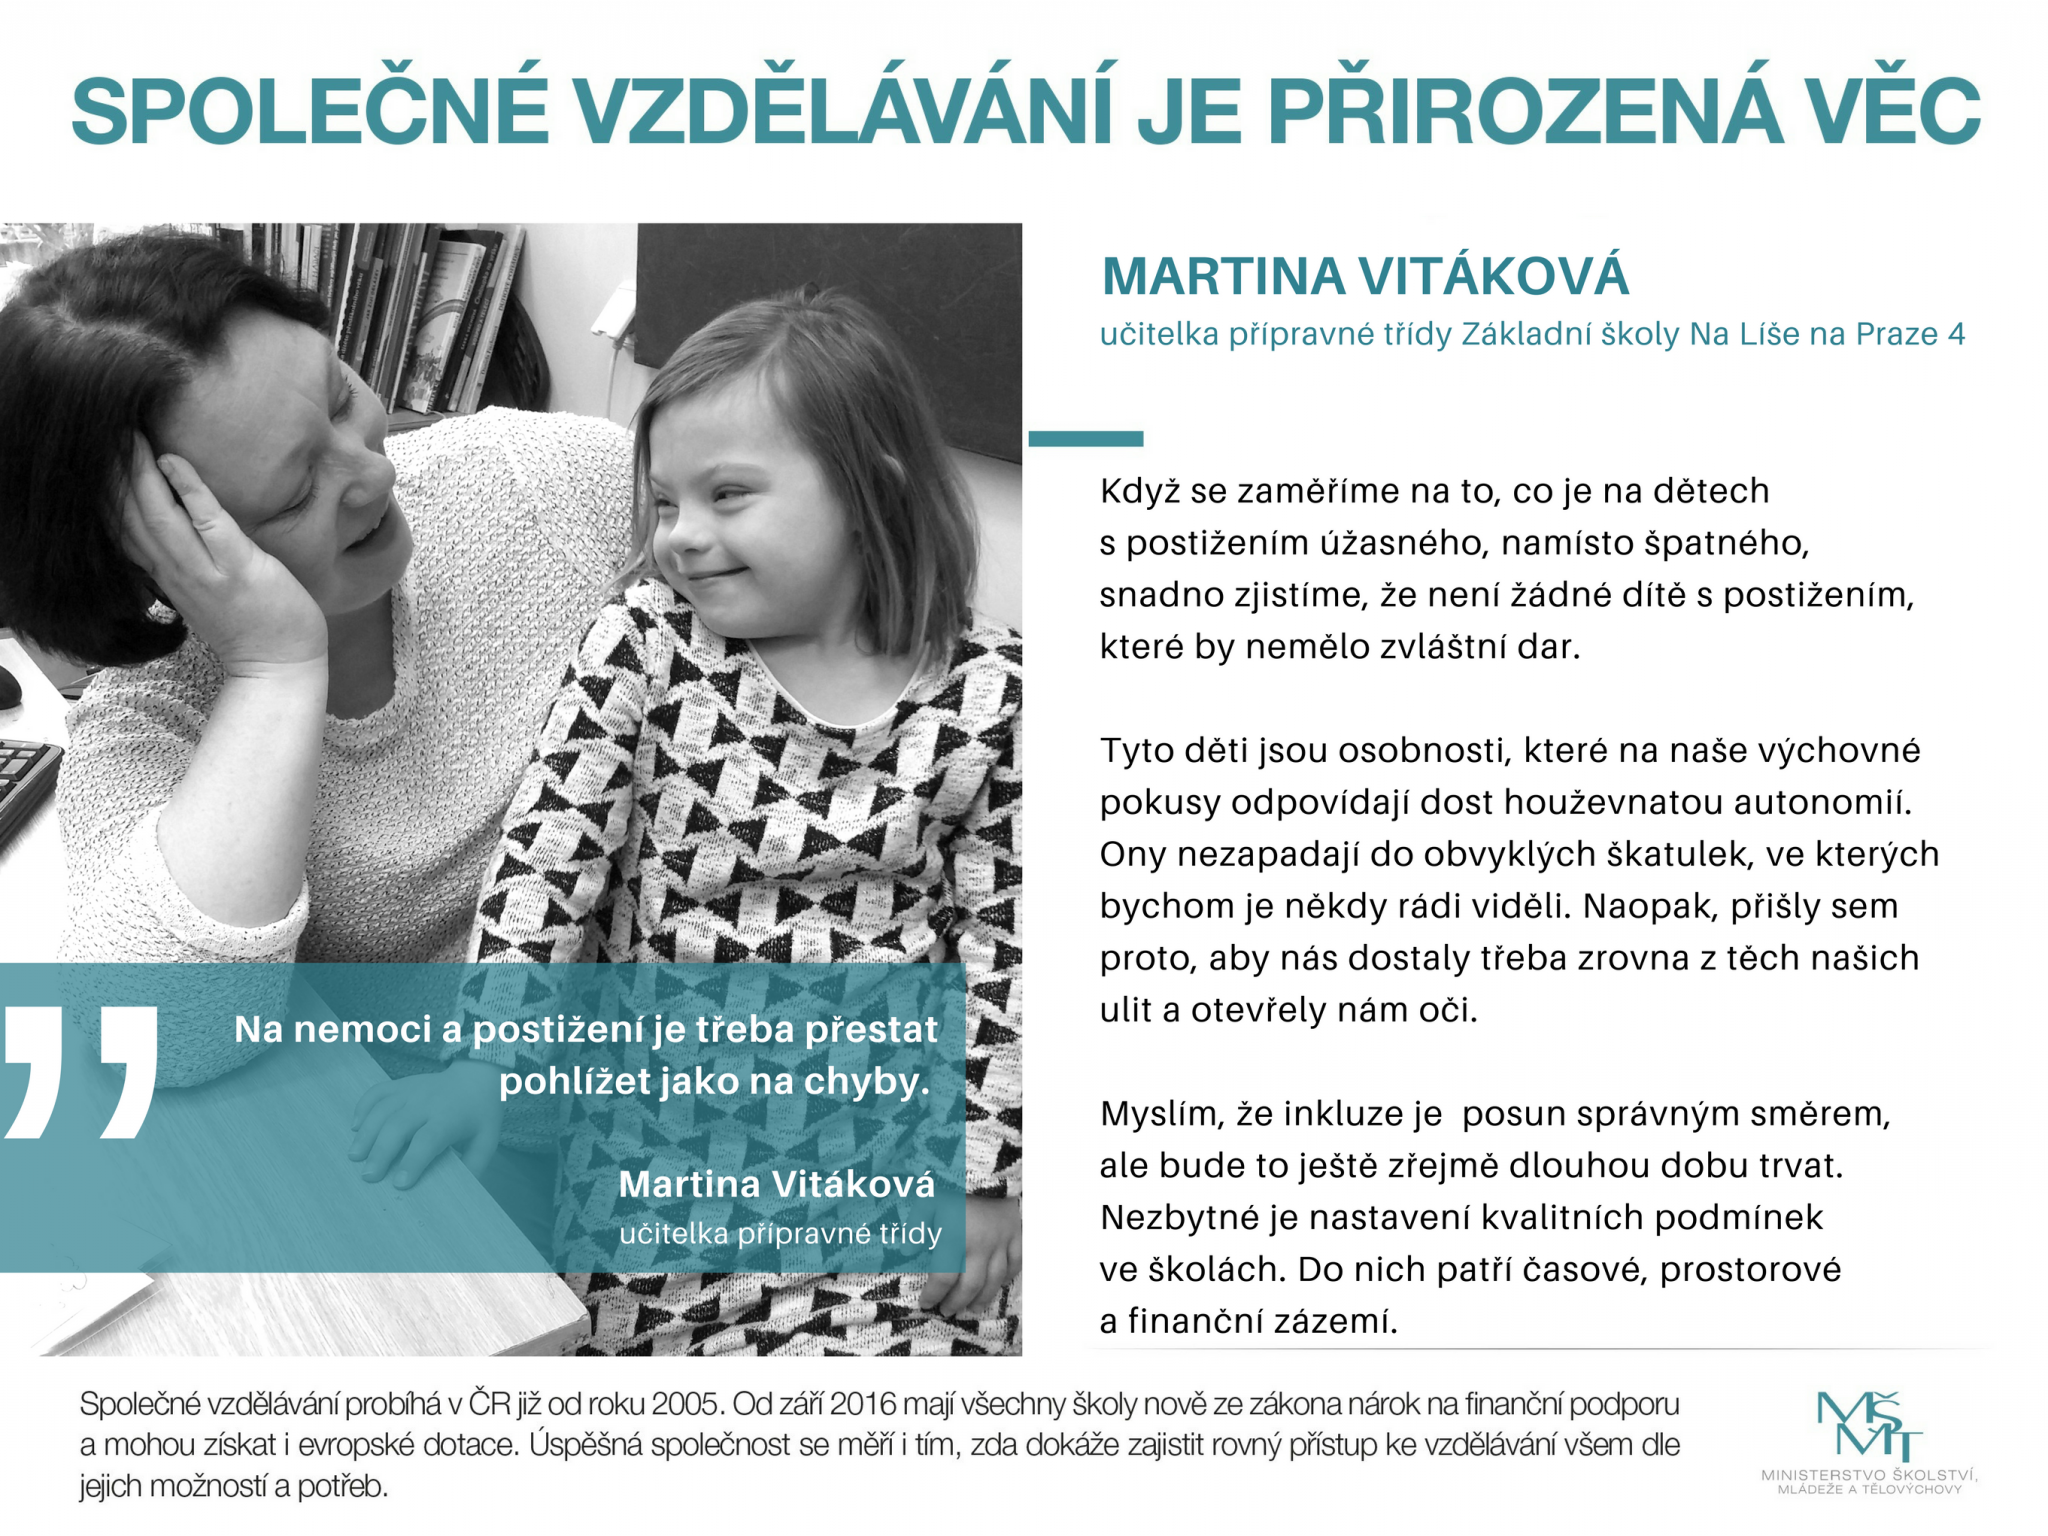 pdp_vitakova_martina